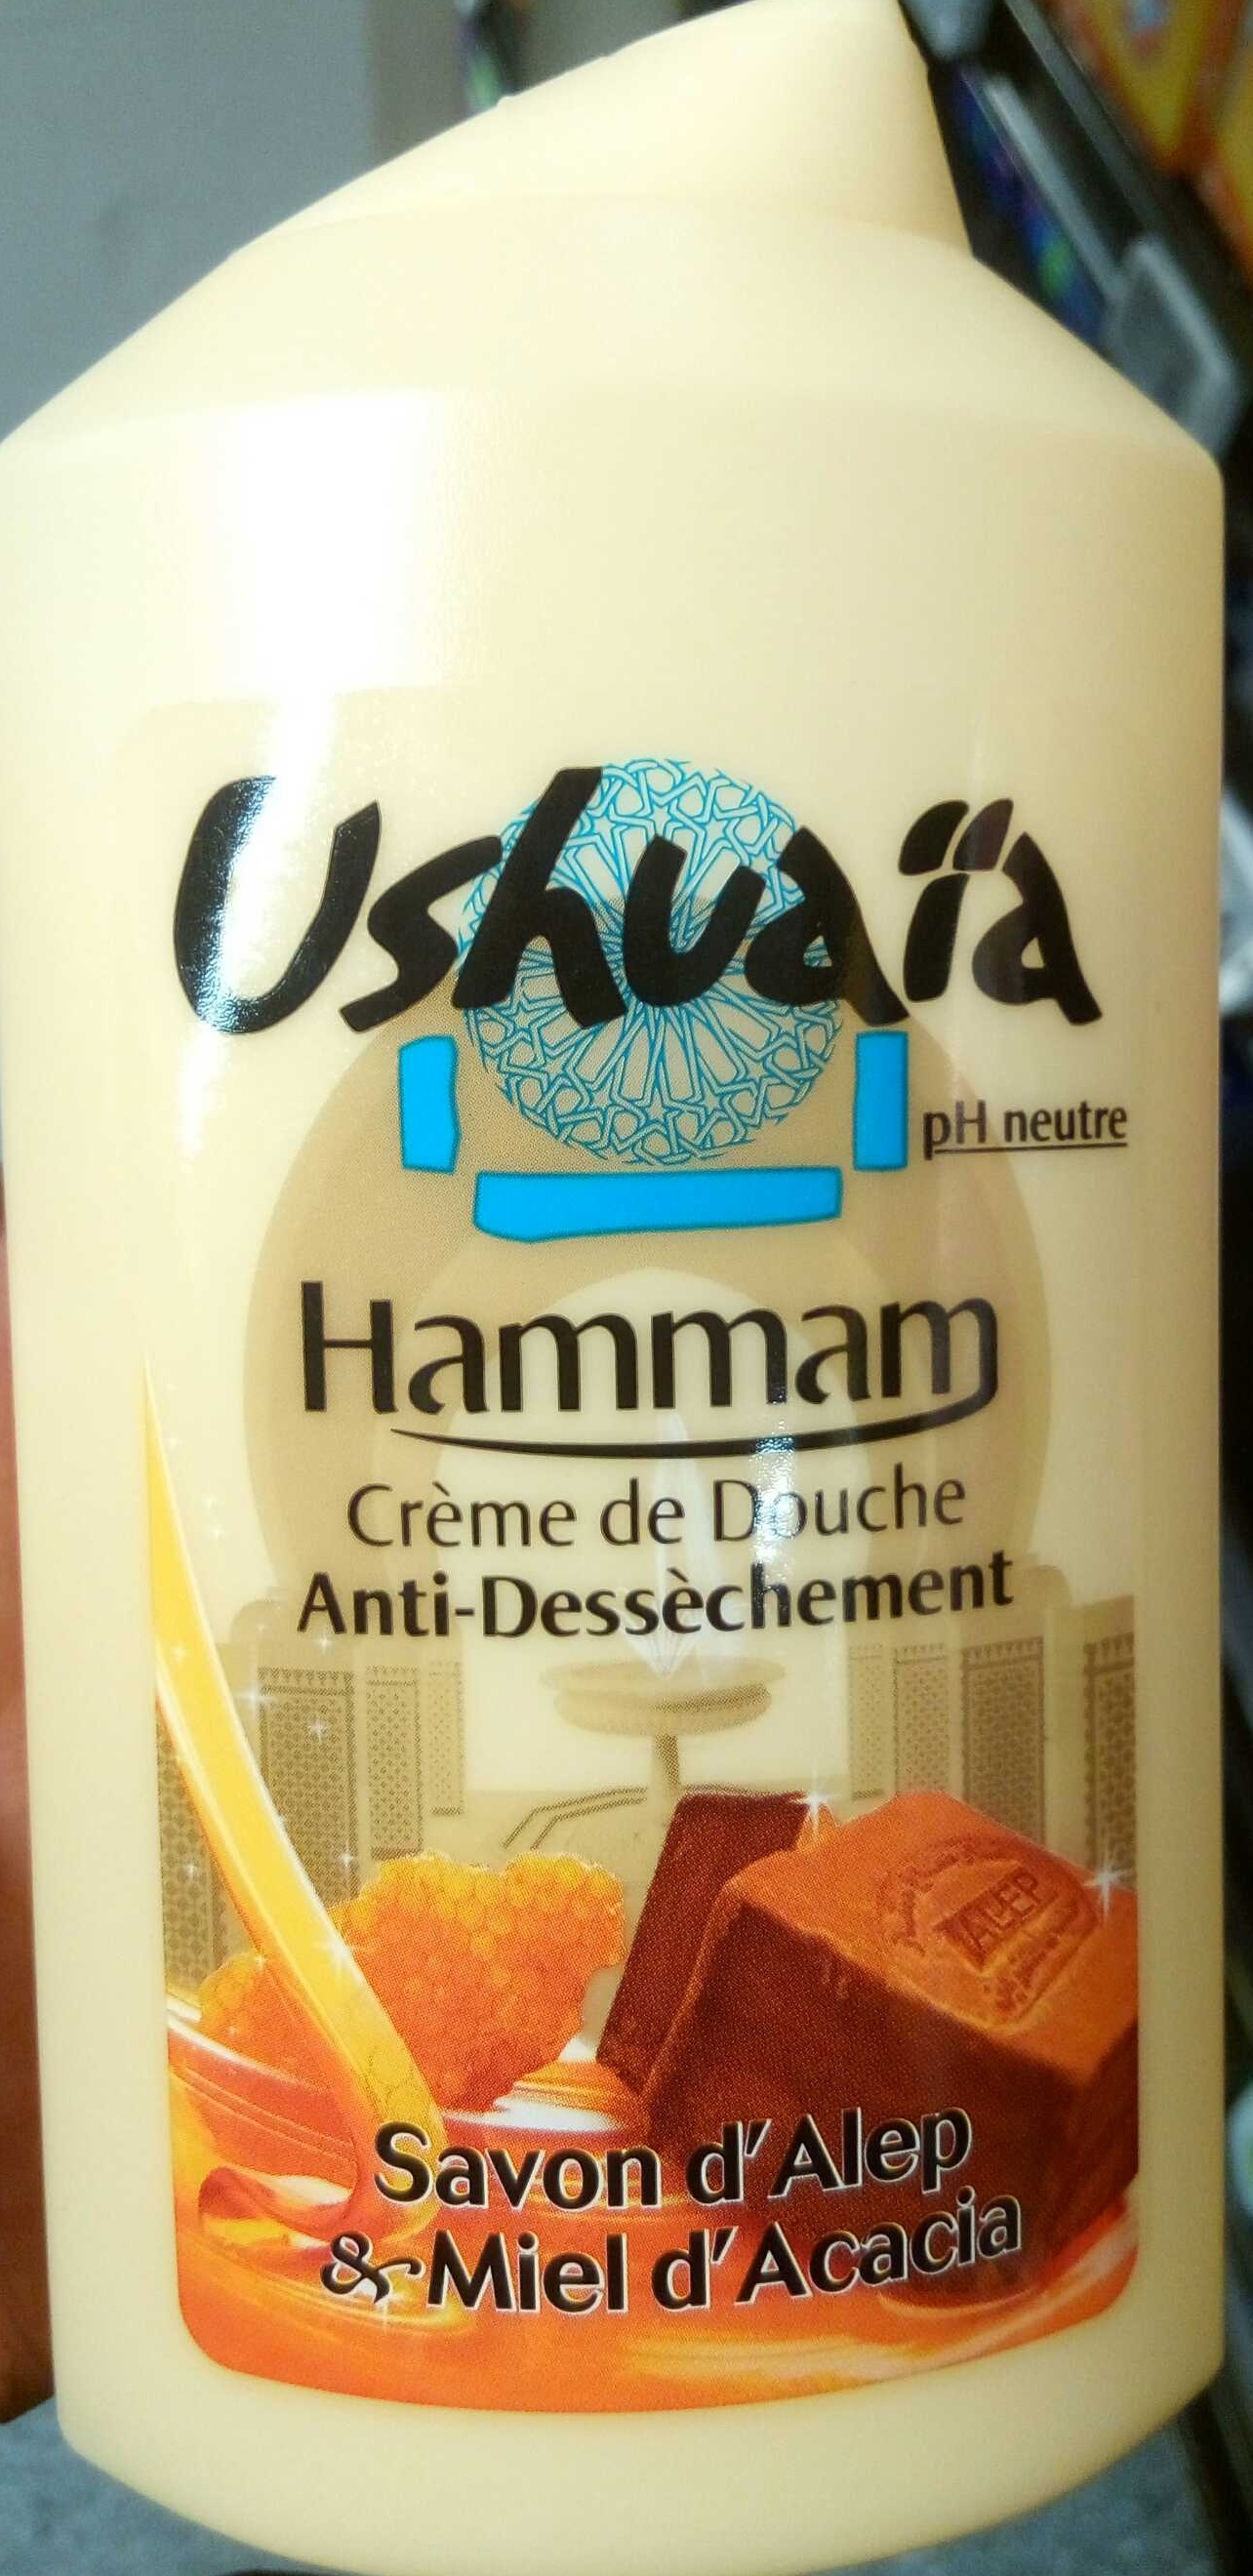 Crème de Douche anti-dessèchement Hammam Savon d'Alep & Miel d'Acacia - Продукт - fr